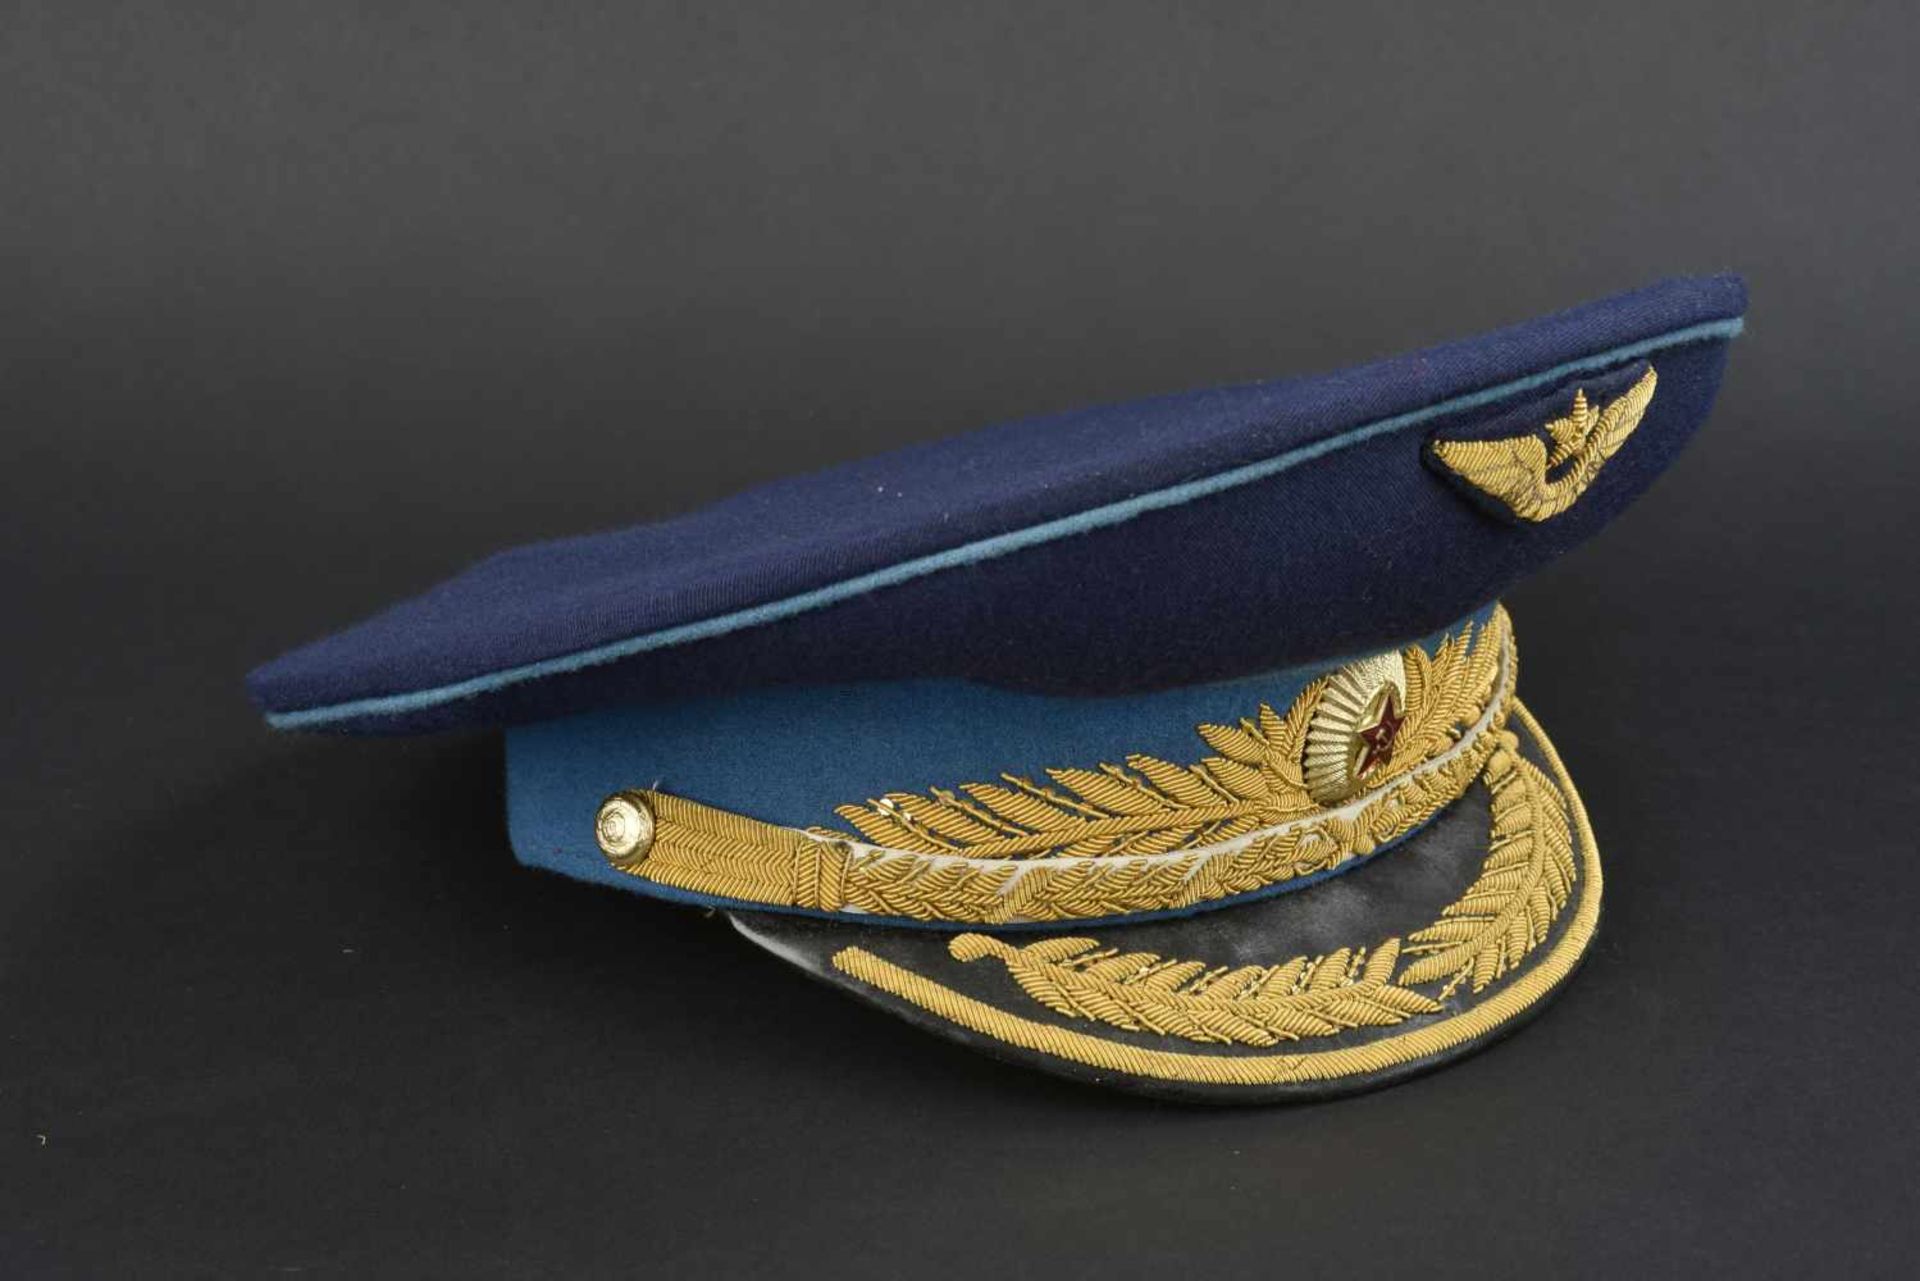 Casquette de général d'aviation soviétique En tissu bleu foncé, bandeau bleu ciel, insigne